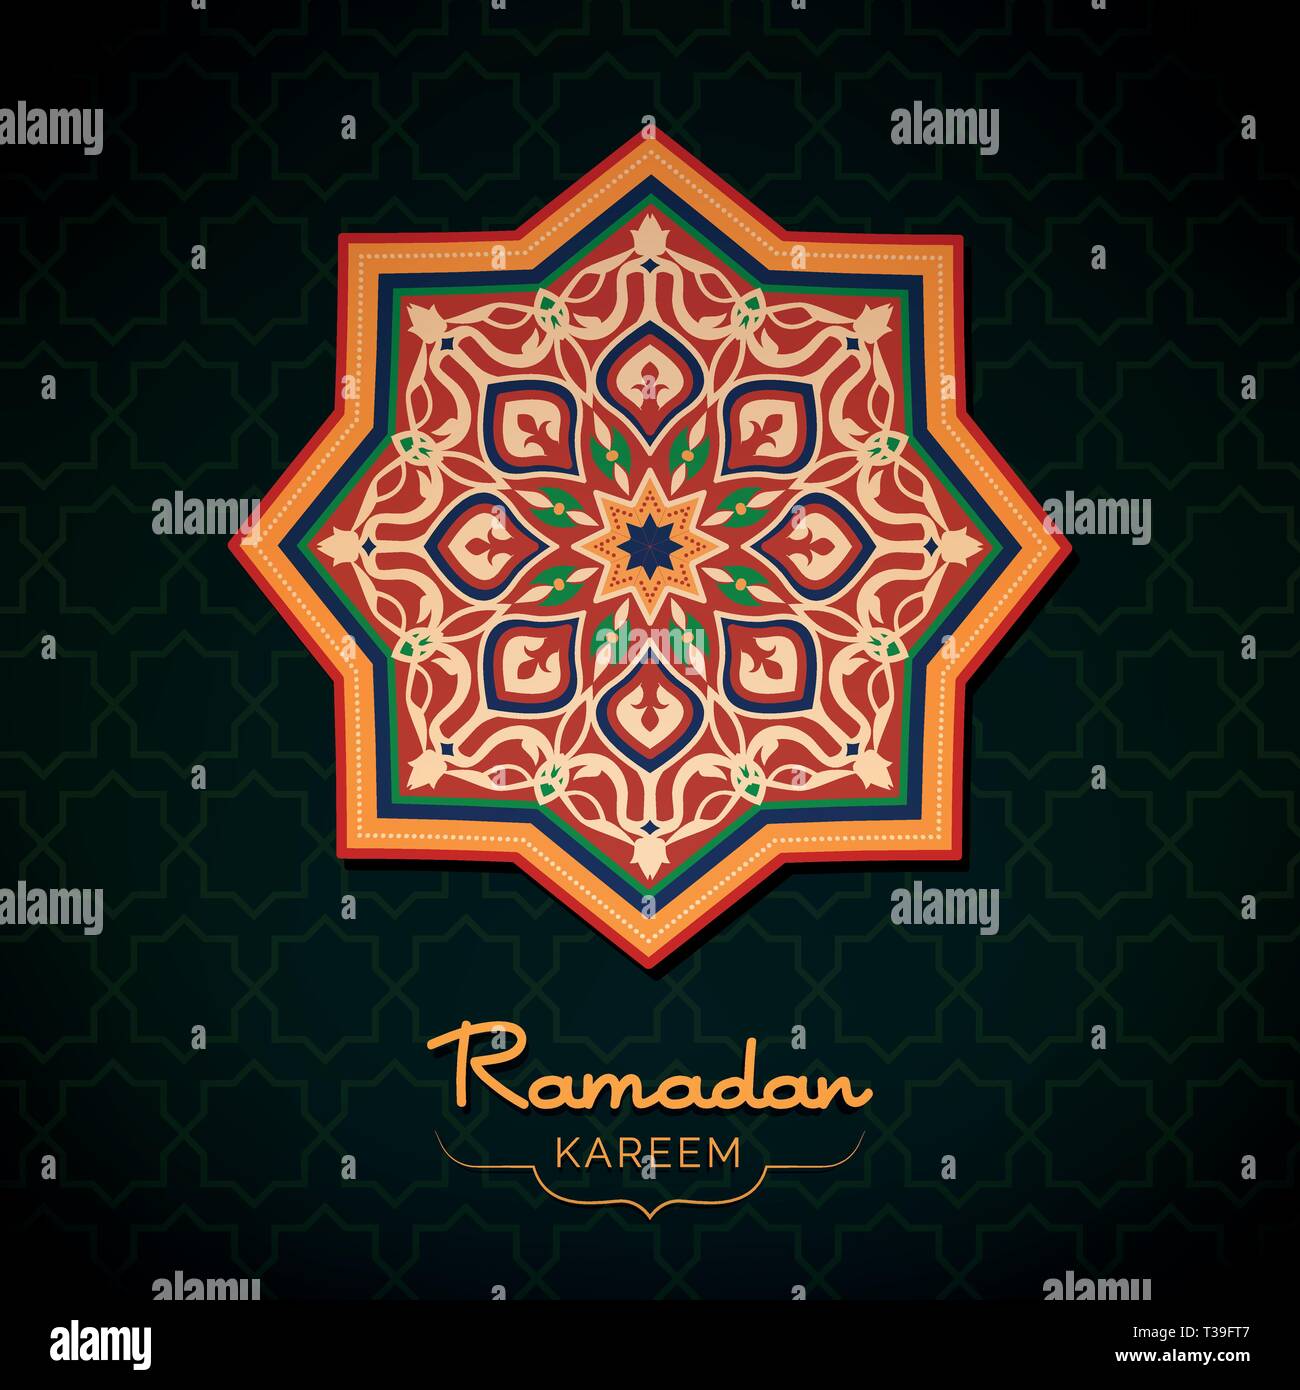 Ramadan Kareem wünsche Karte mit orientalischen Stil, der islamischen Kultur und Religion Konzept Stock Vektor